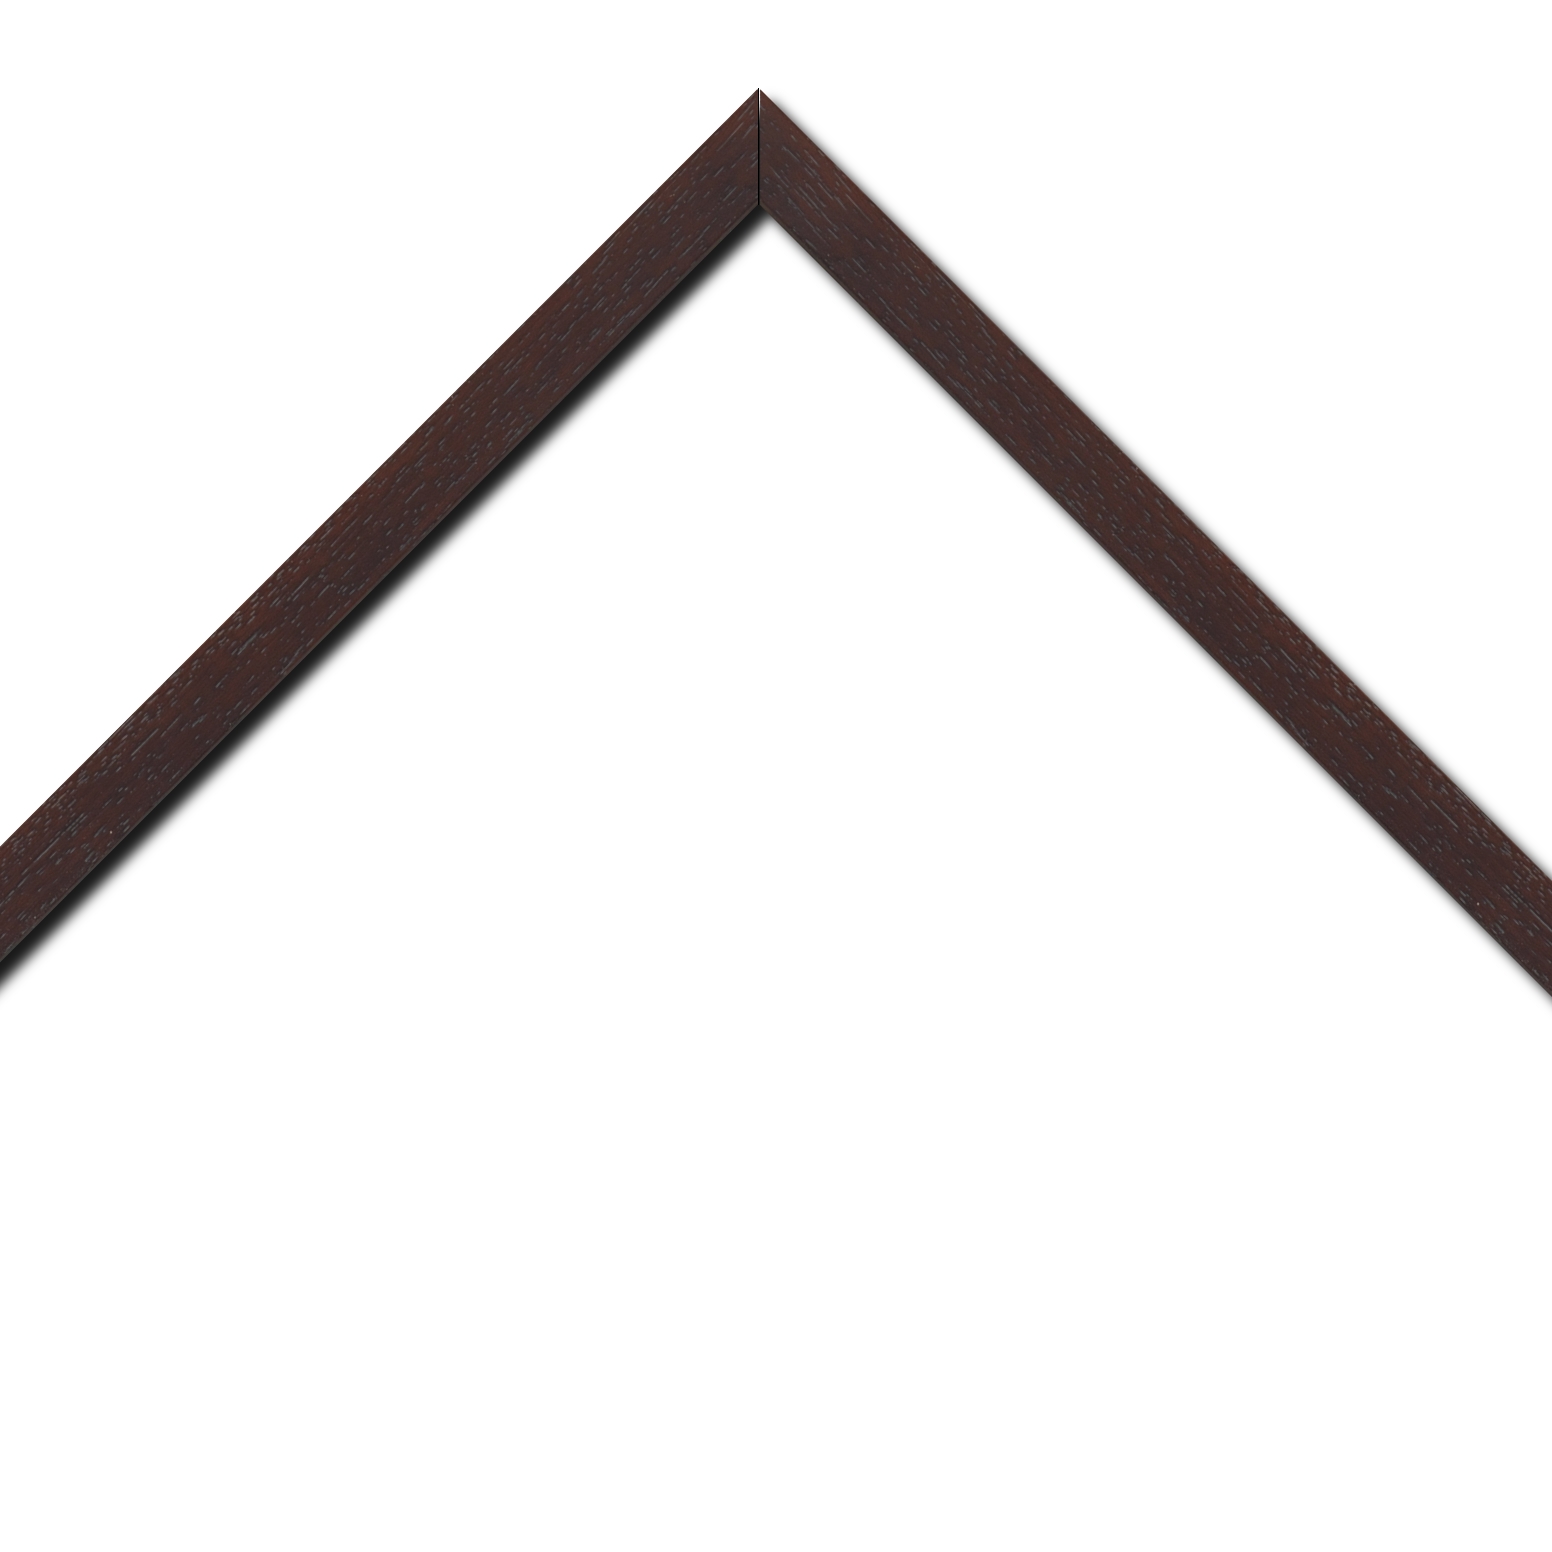 Baguette bois profil plat largeur 2cm hauteur 3.3cm marron foncé satiné (aussi appelé cache clou)